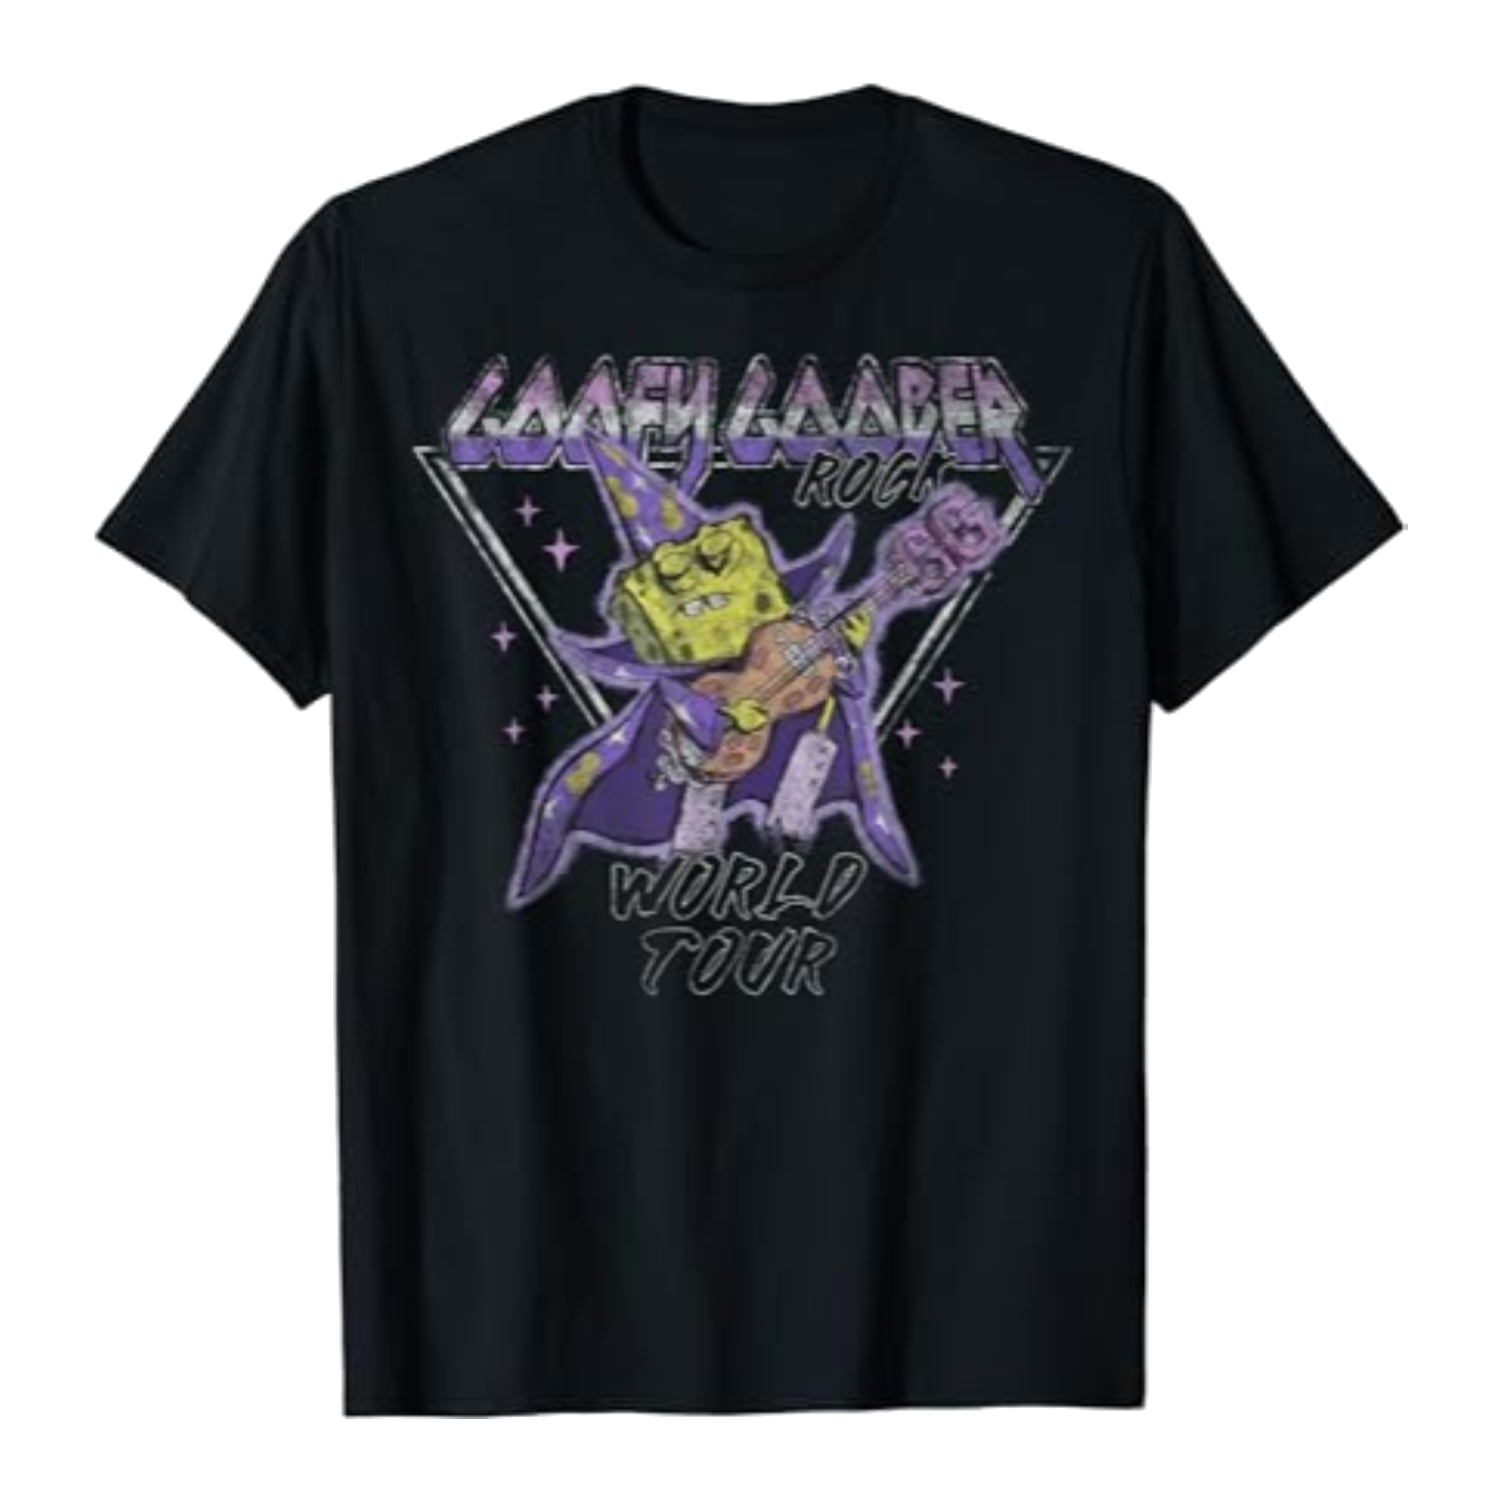 La t-shirt del Goofy Goober Rock World Tour